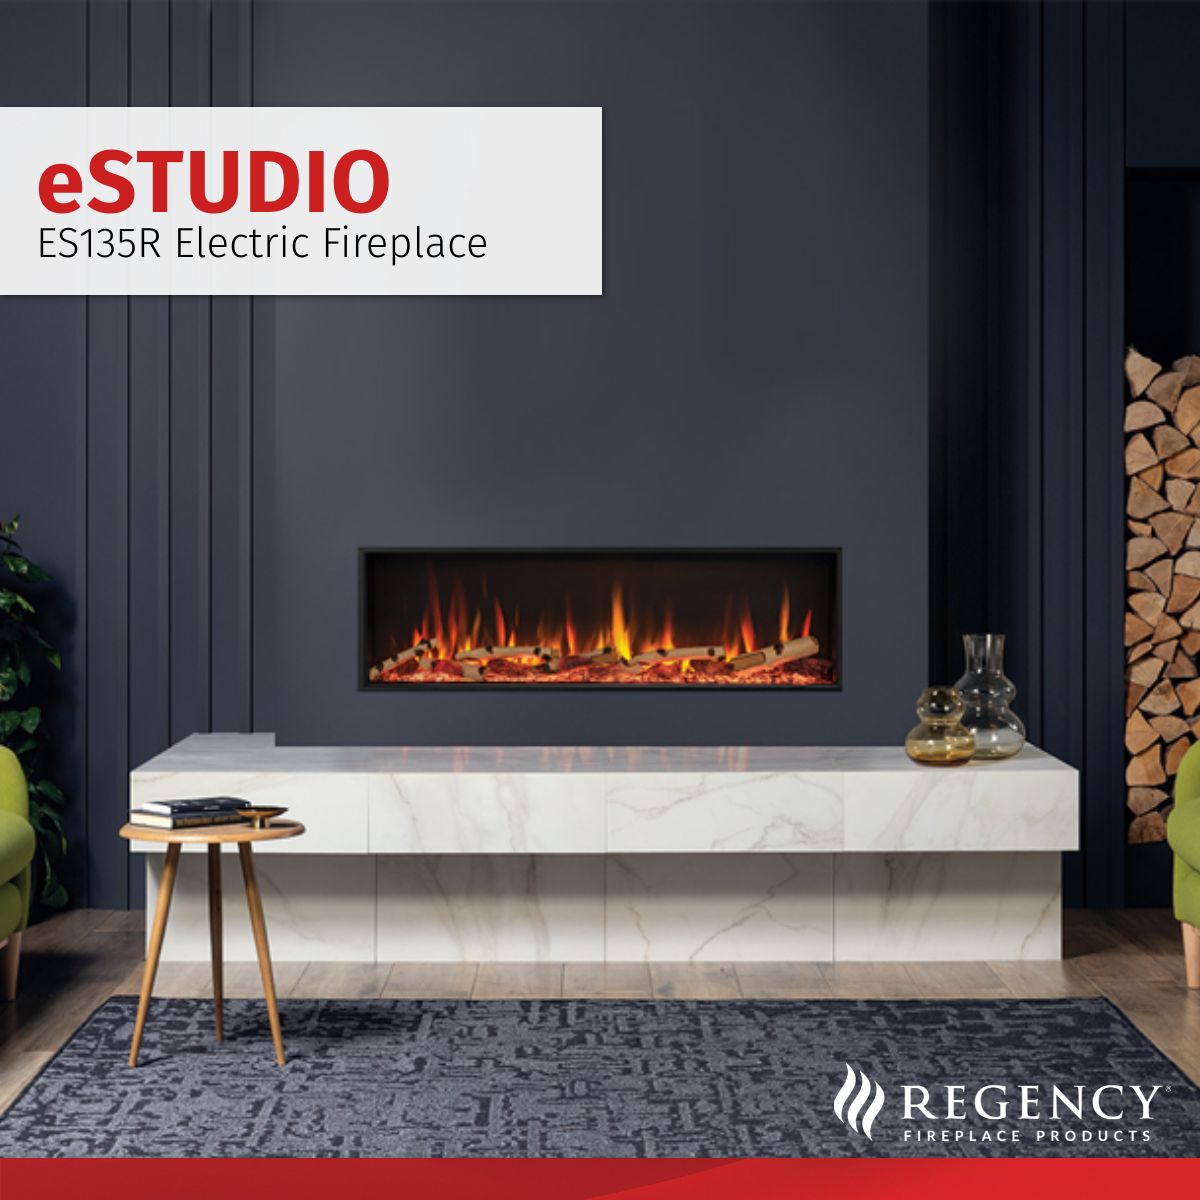 Regency eStudio Inset Electric Fire